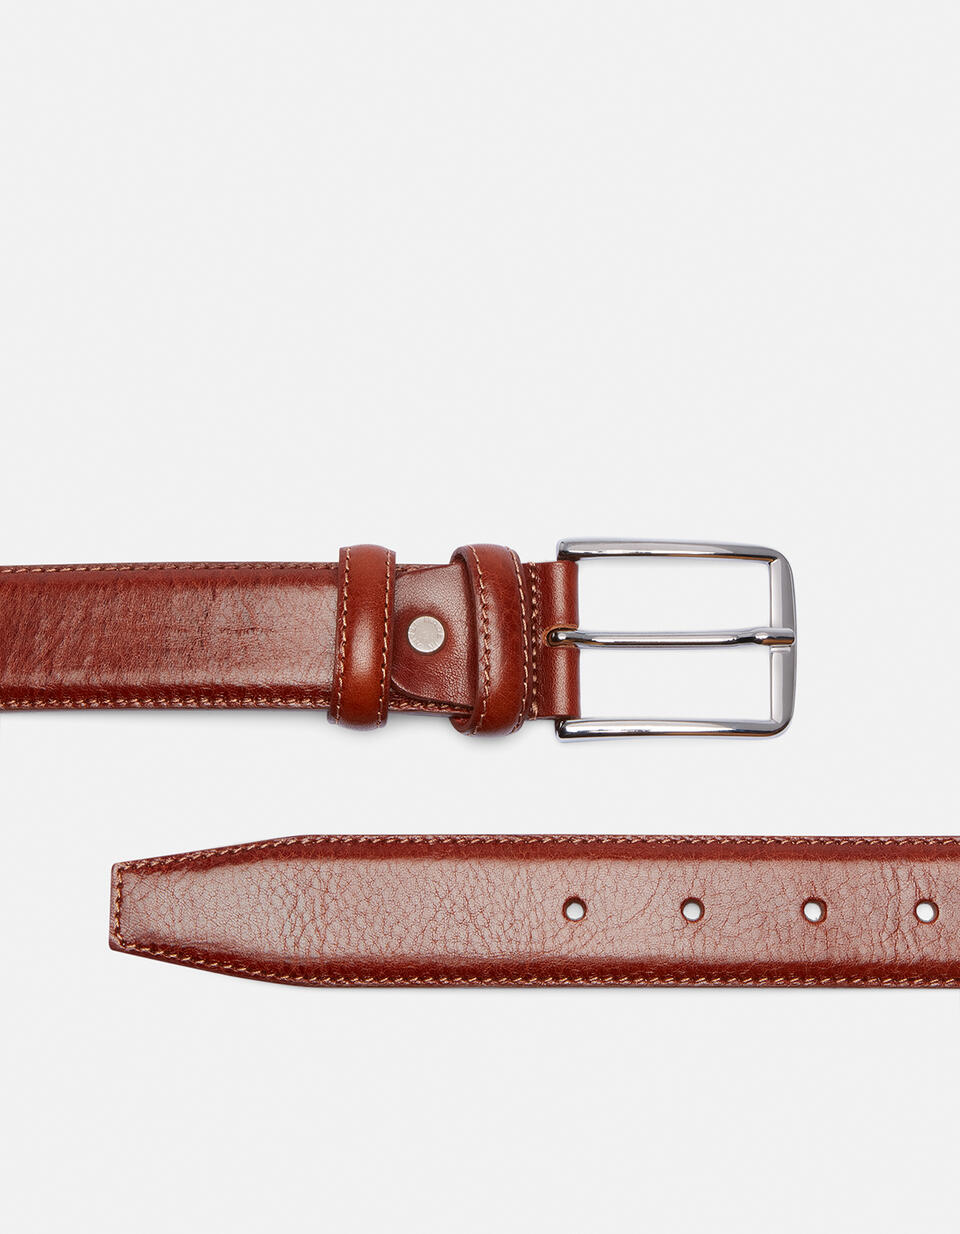 Cintura Elegante in Pelle con Punta quadra alta 3,5 cm MARRONE  - Cinture Uomo - Cinture - Cuoieria Fiorentina